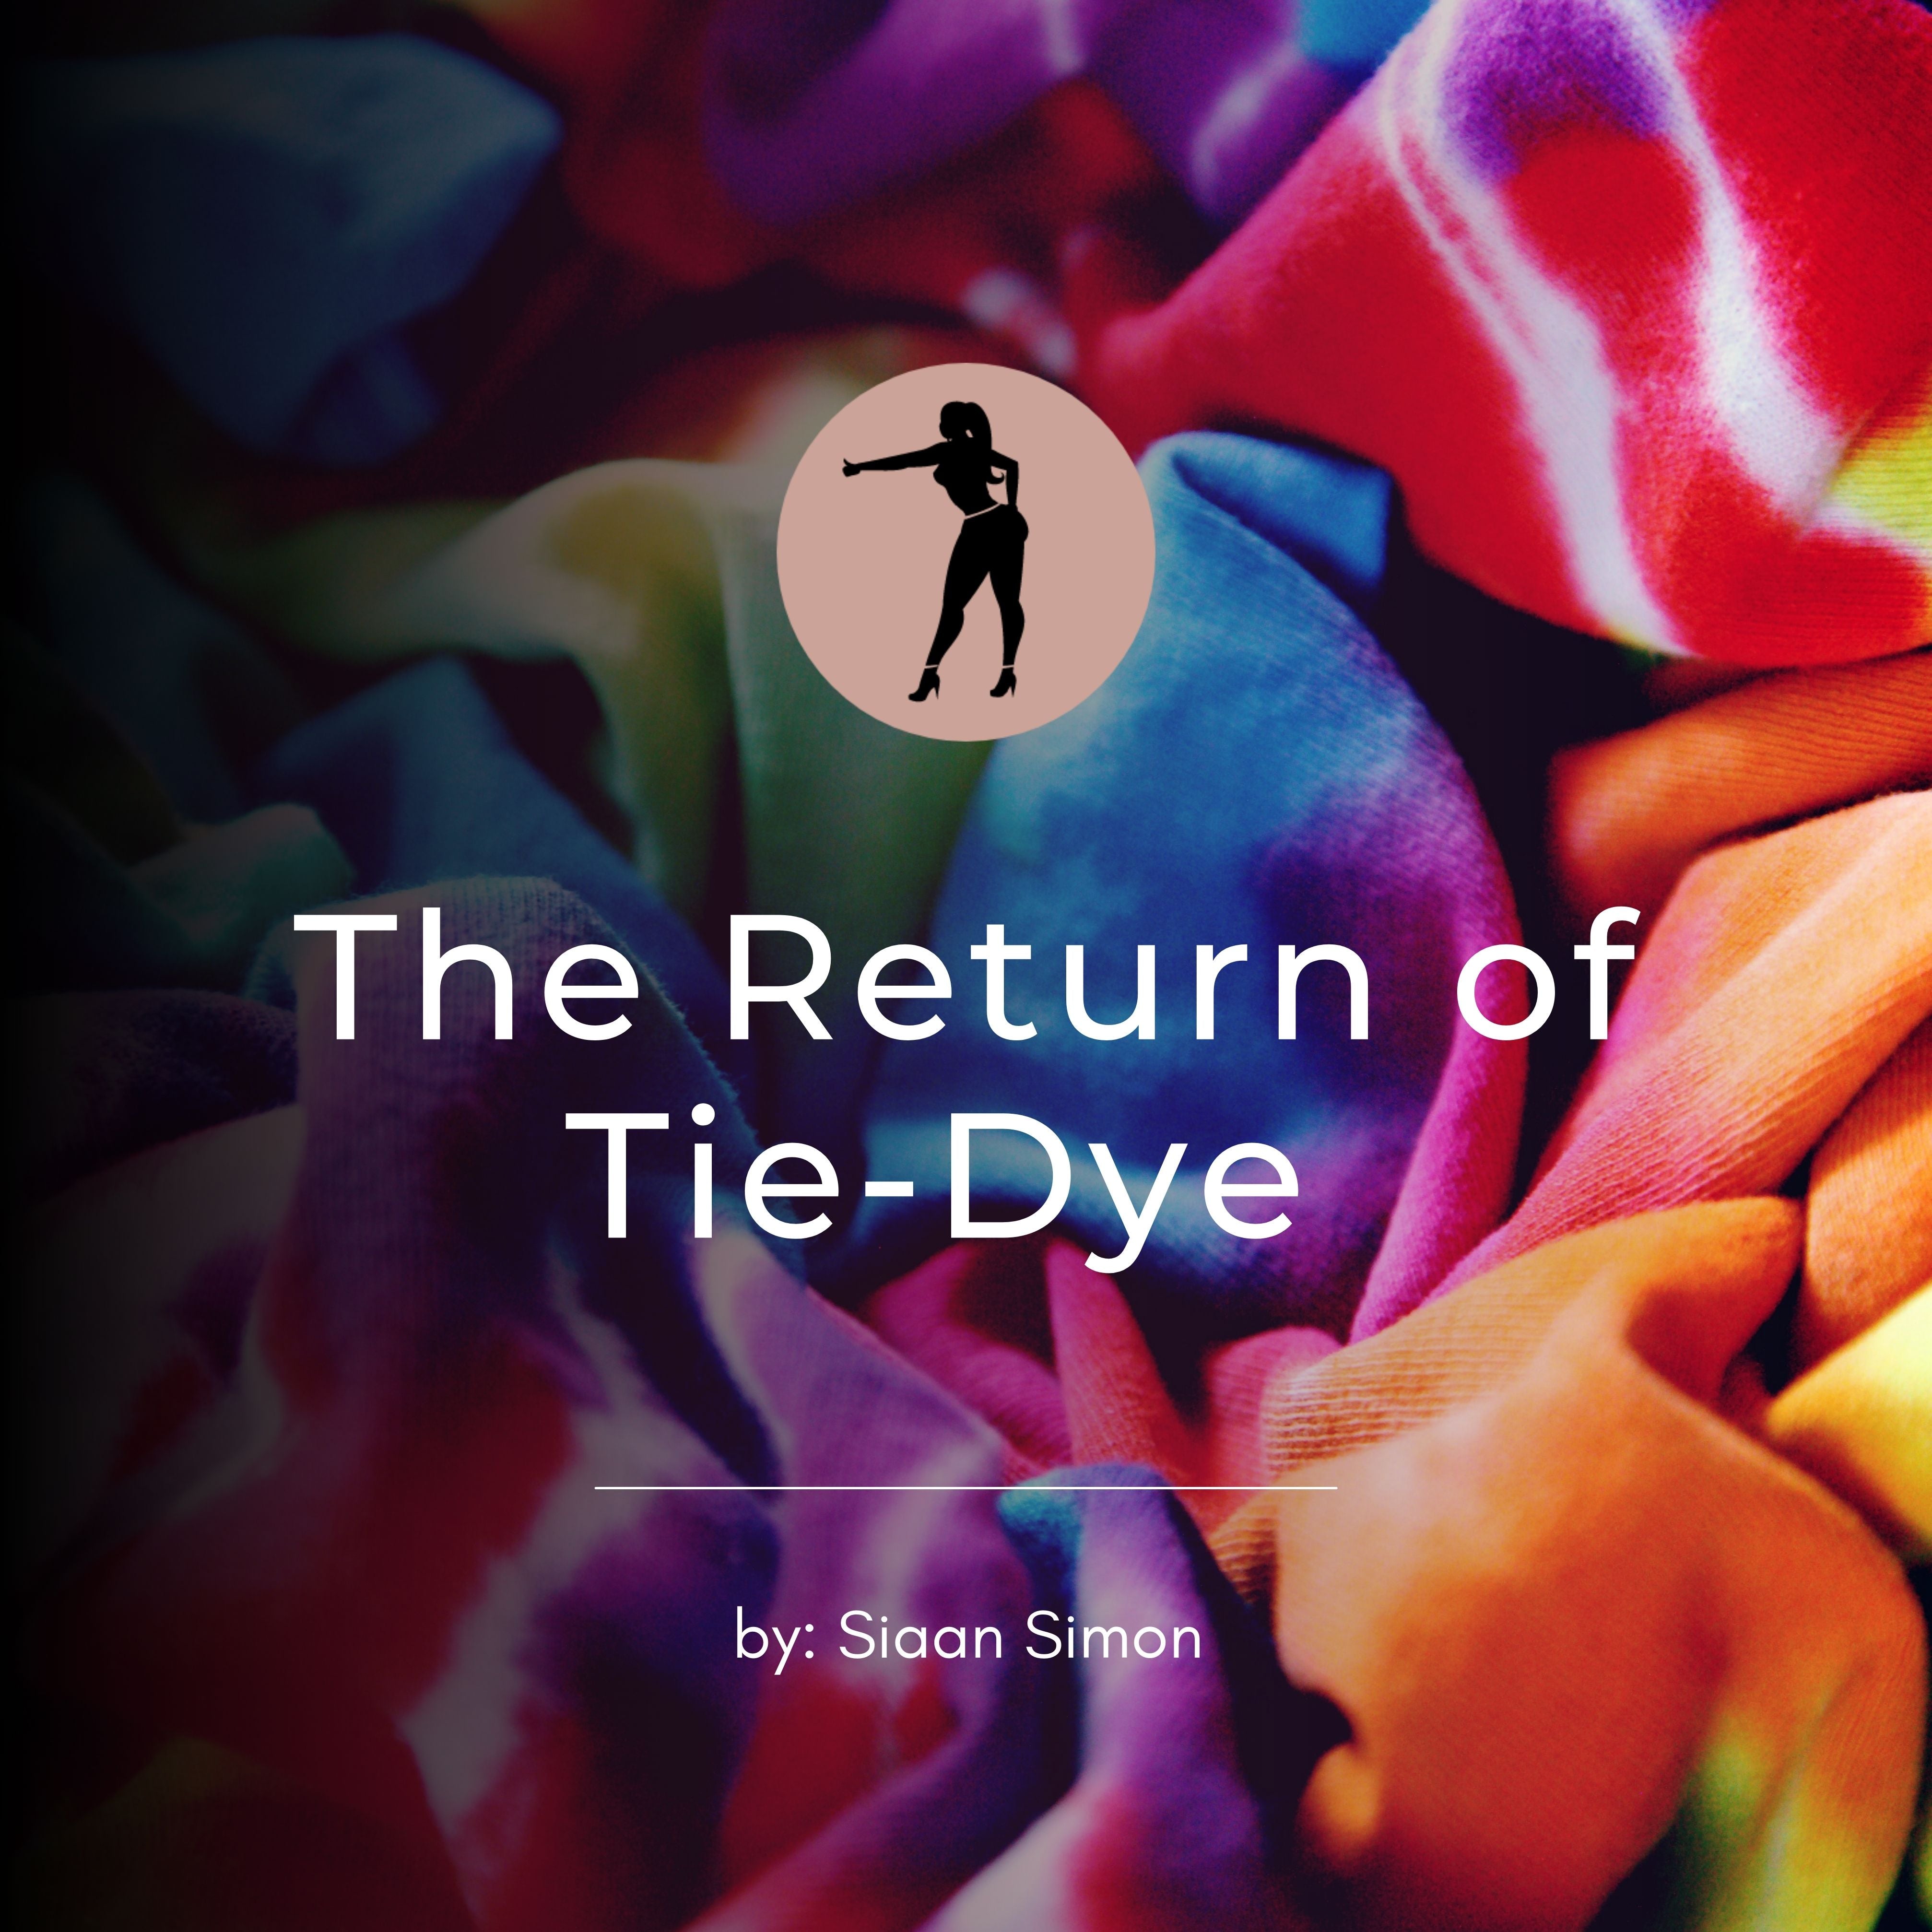 The Return of Tie-Dye